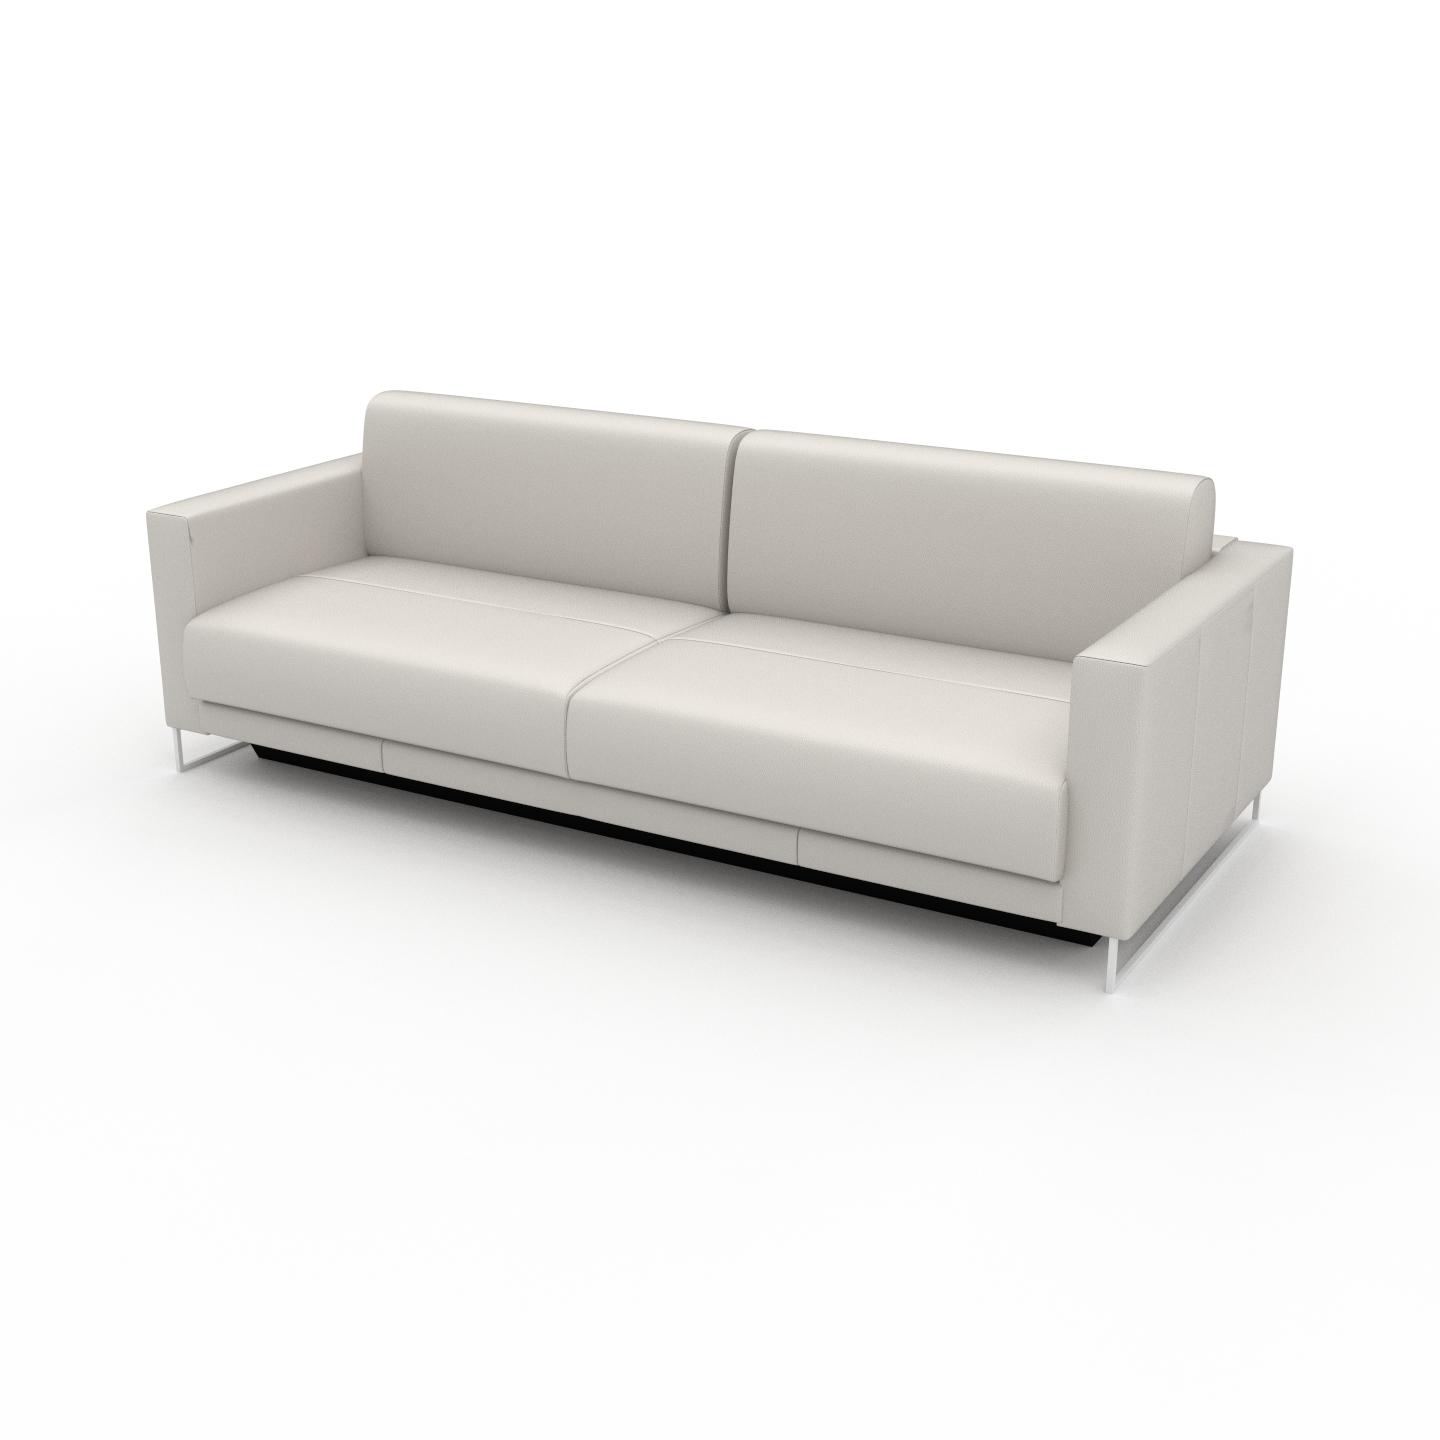 MYCS Sofa 3-Sitzer Weiß Pigmentiertes Leder - Elegantes, gemütliches 3-Sitzer Sofa: Hochwertige Qualität, einzigartiges Design - 224 x 75 x 98 cm,...